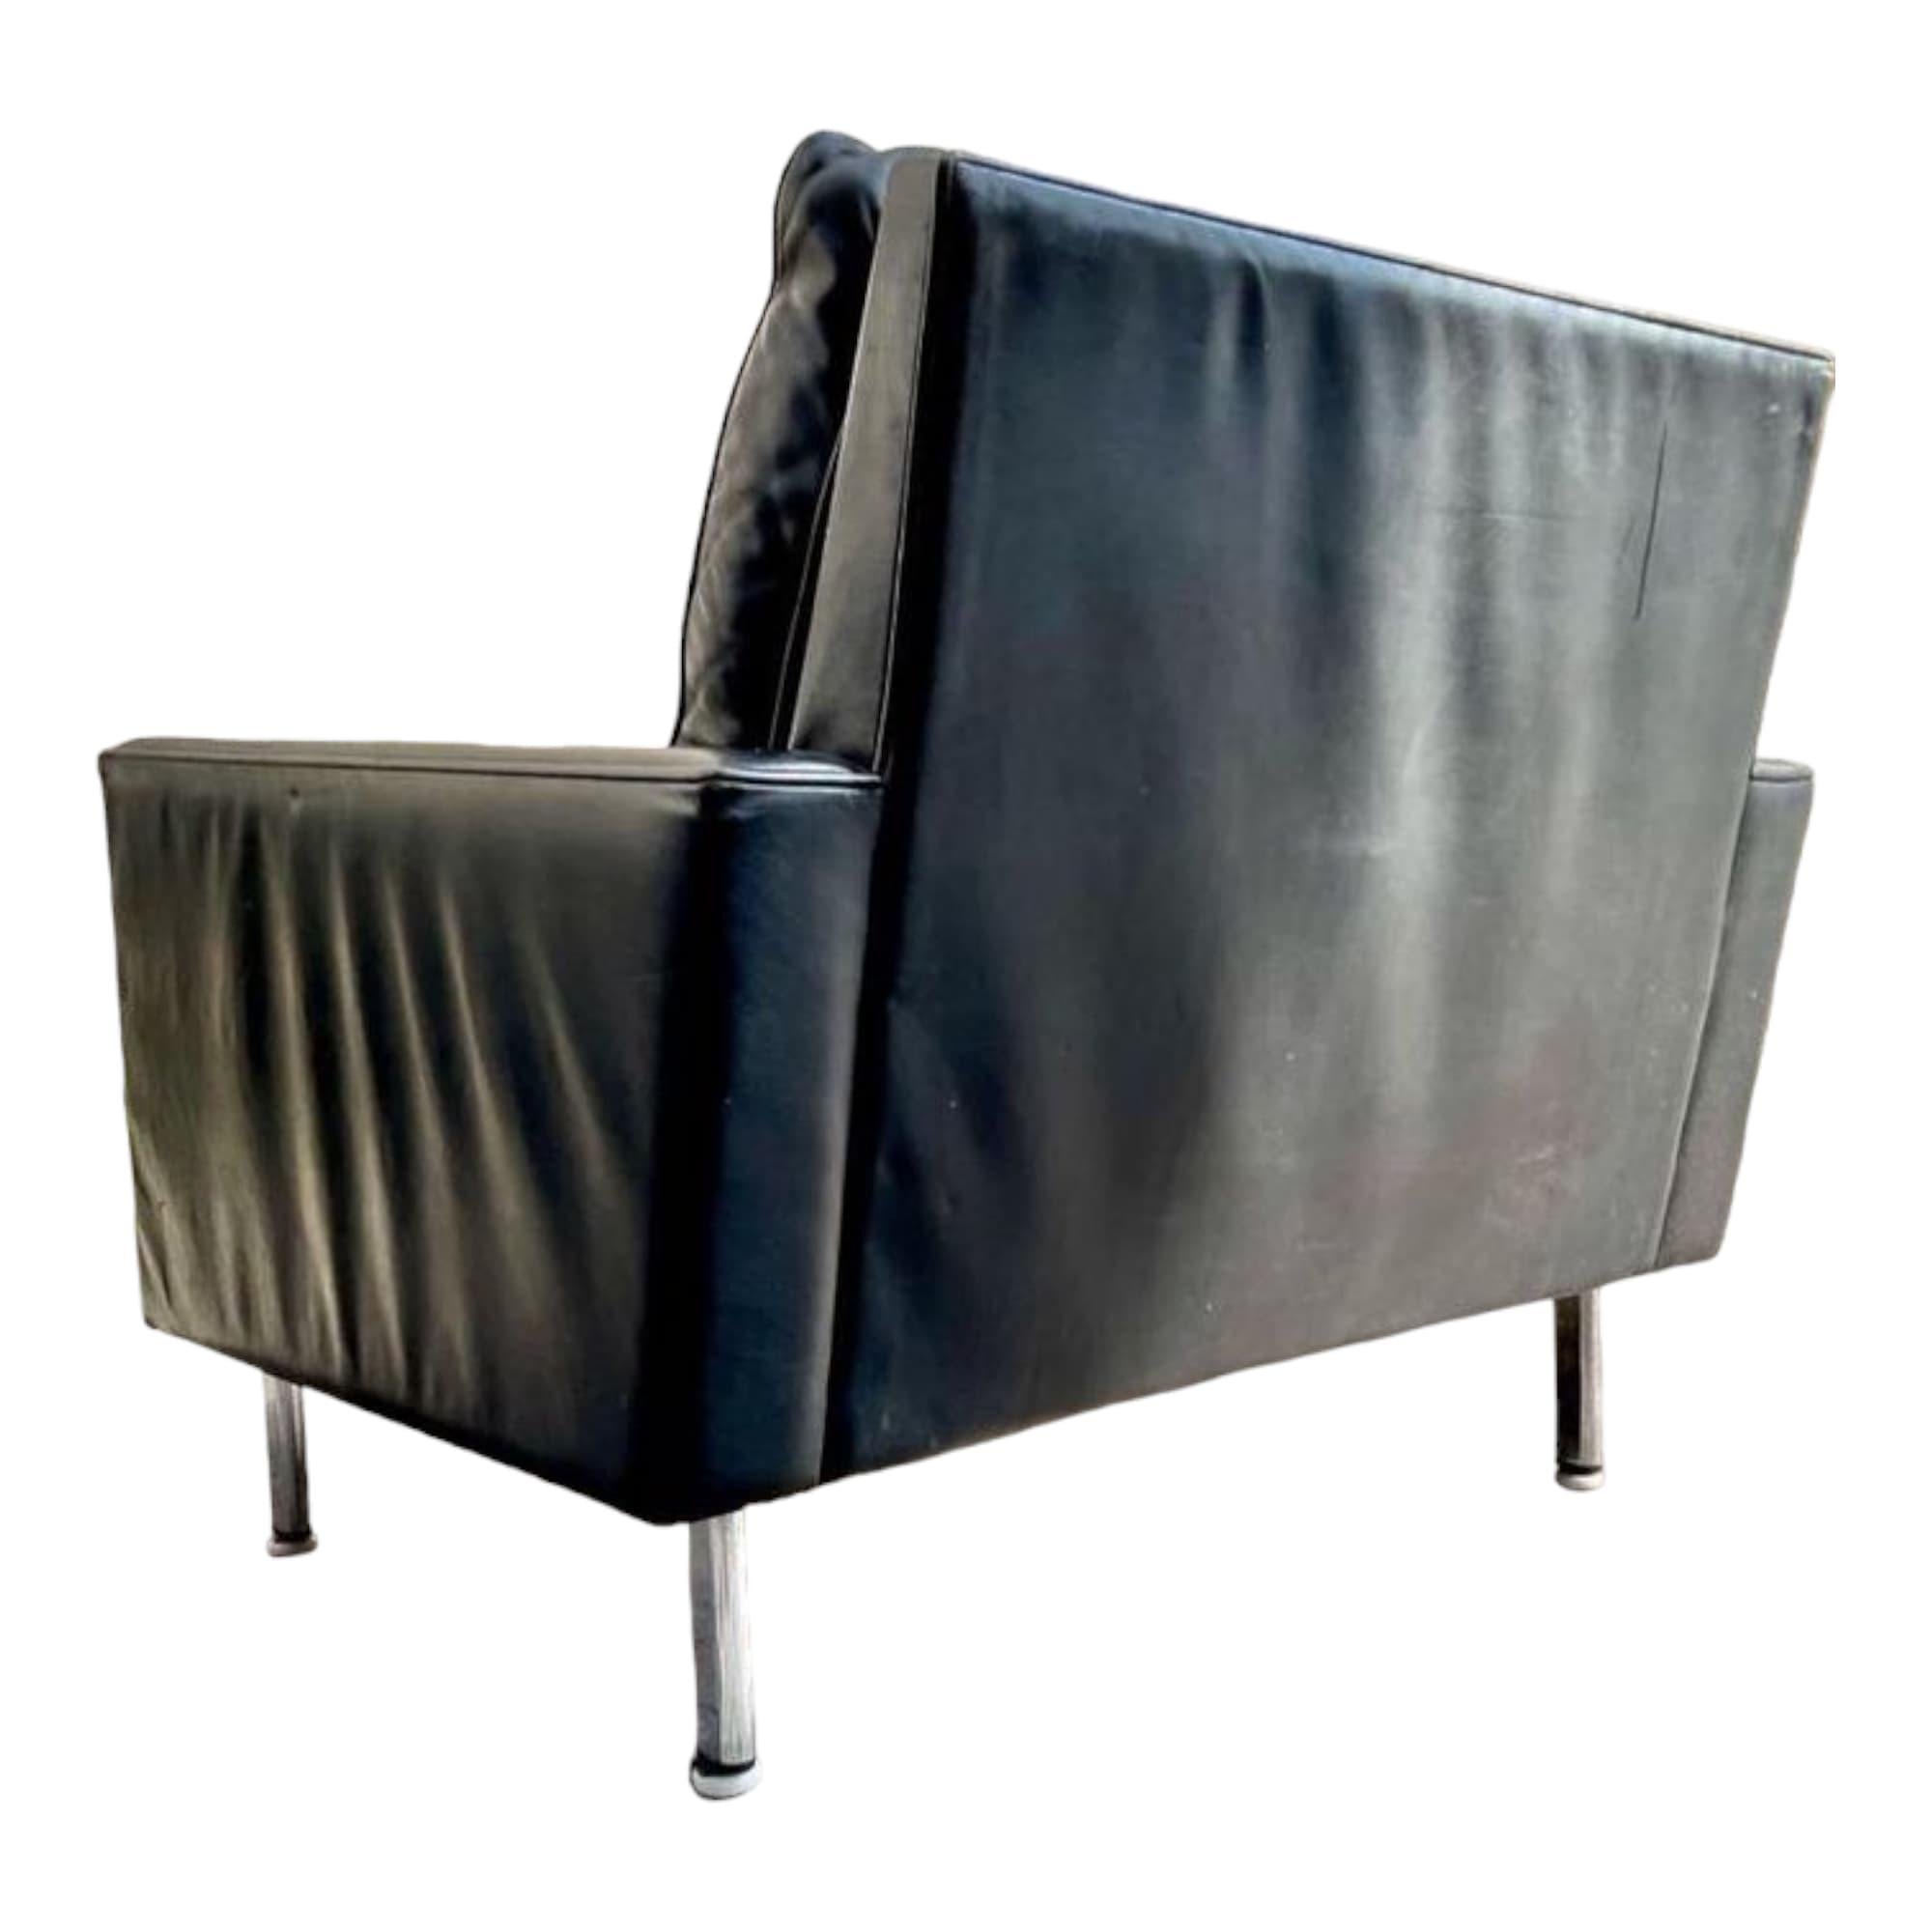 Très belle paire de fauteuils de George Nelson, modèle Loose Cushion, pour Herman Miller. Ces superbes antiquités datant de 1970 offrent un design intemporel et un confort exceptionnel. Avec une hauteur d'assise de 41 cm, ces fauteuils sont parfaits